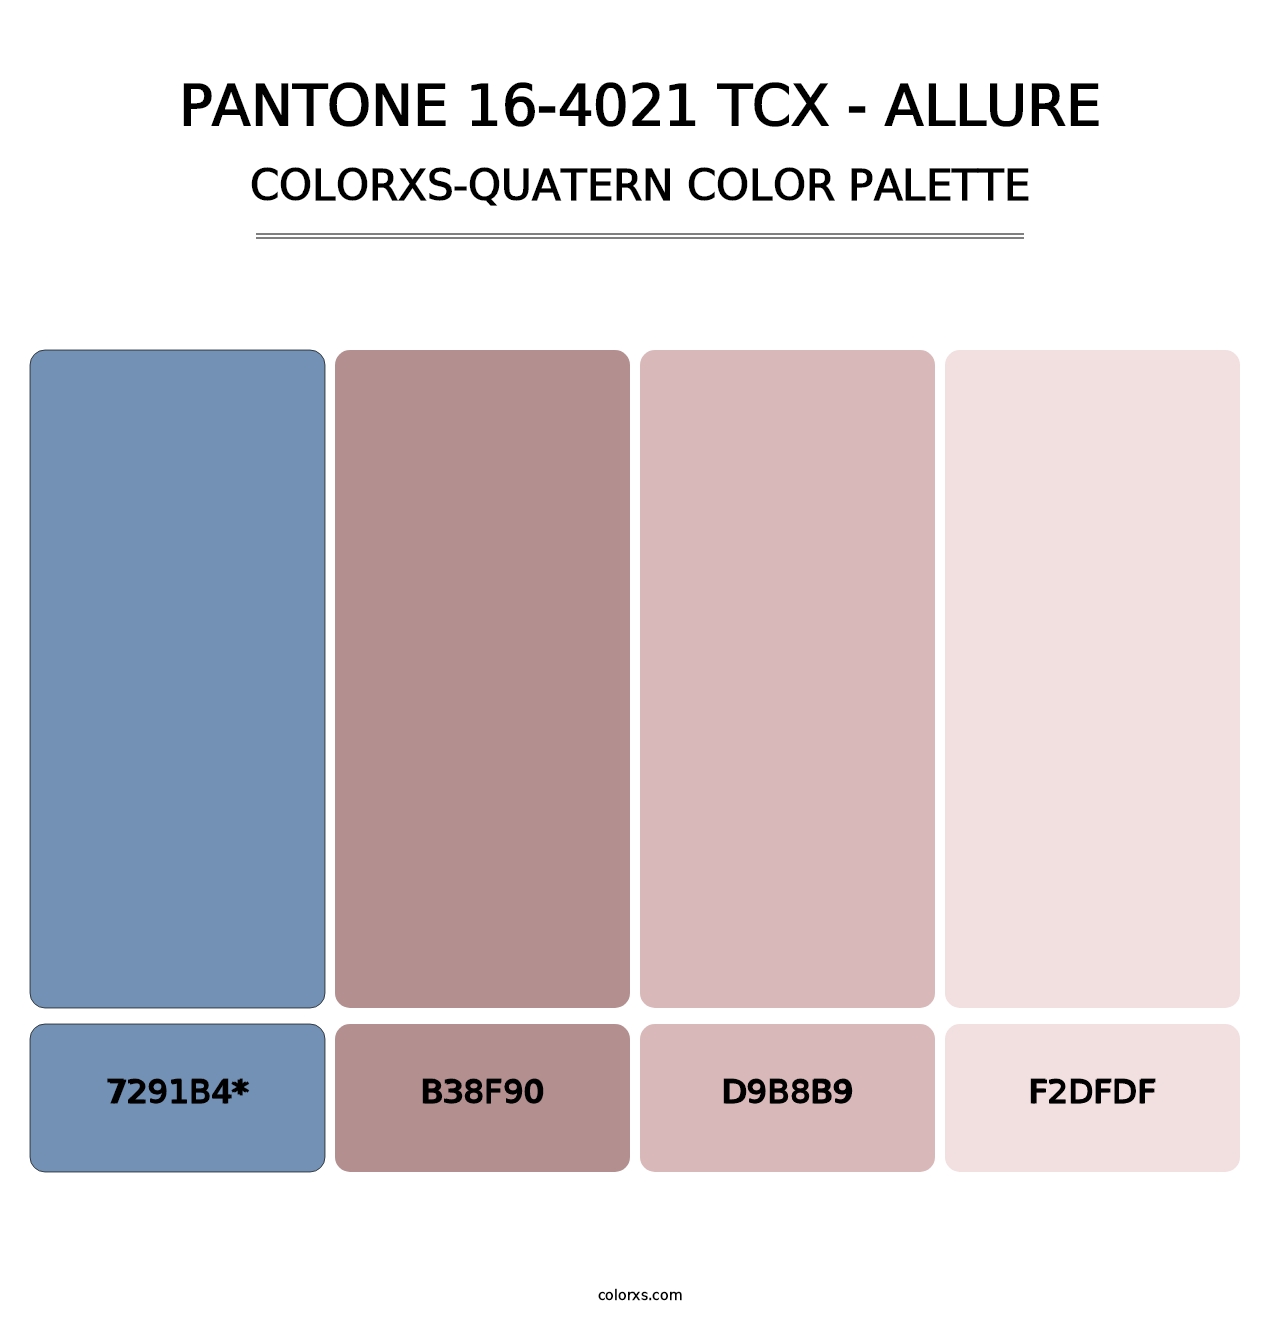 PANTONE 16-4021 TCX - Allure - Colorxs Quatern Palette